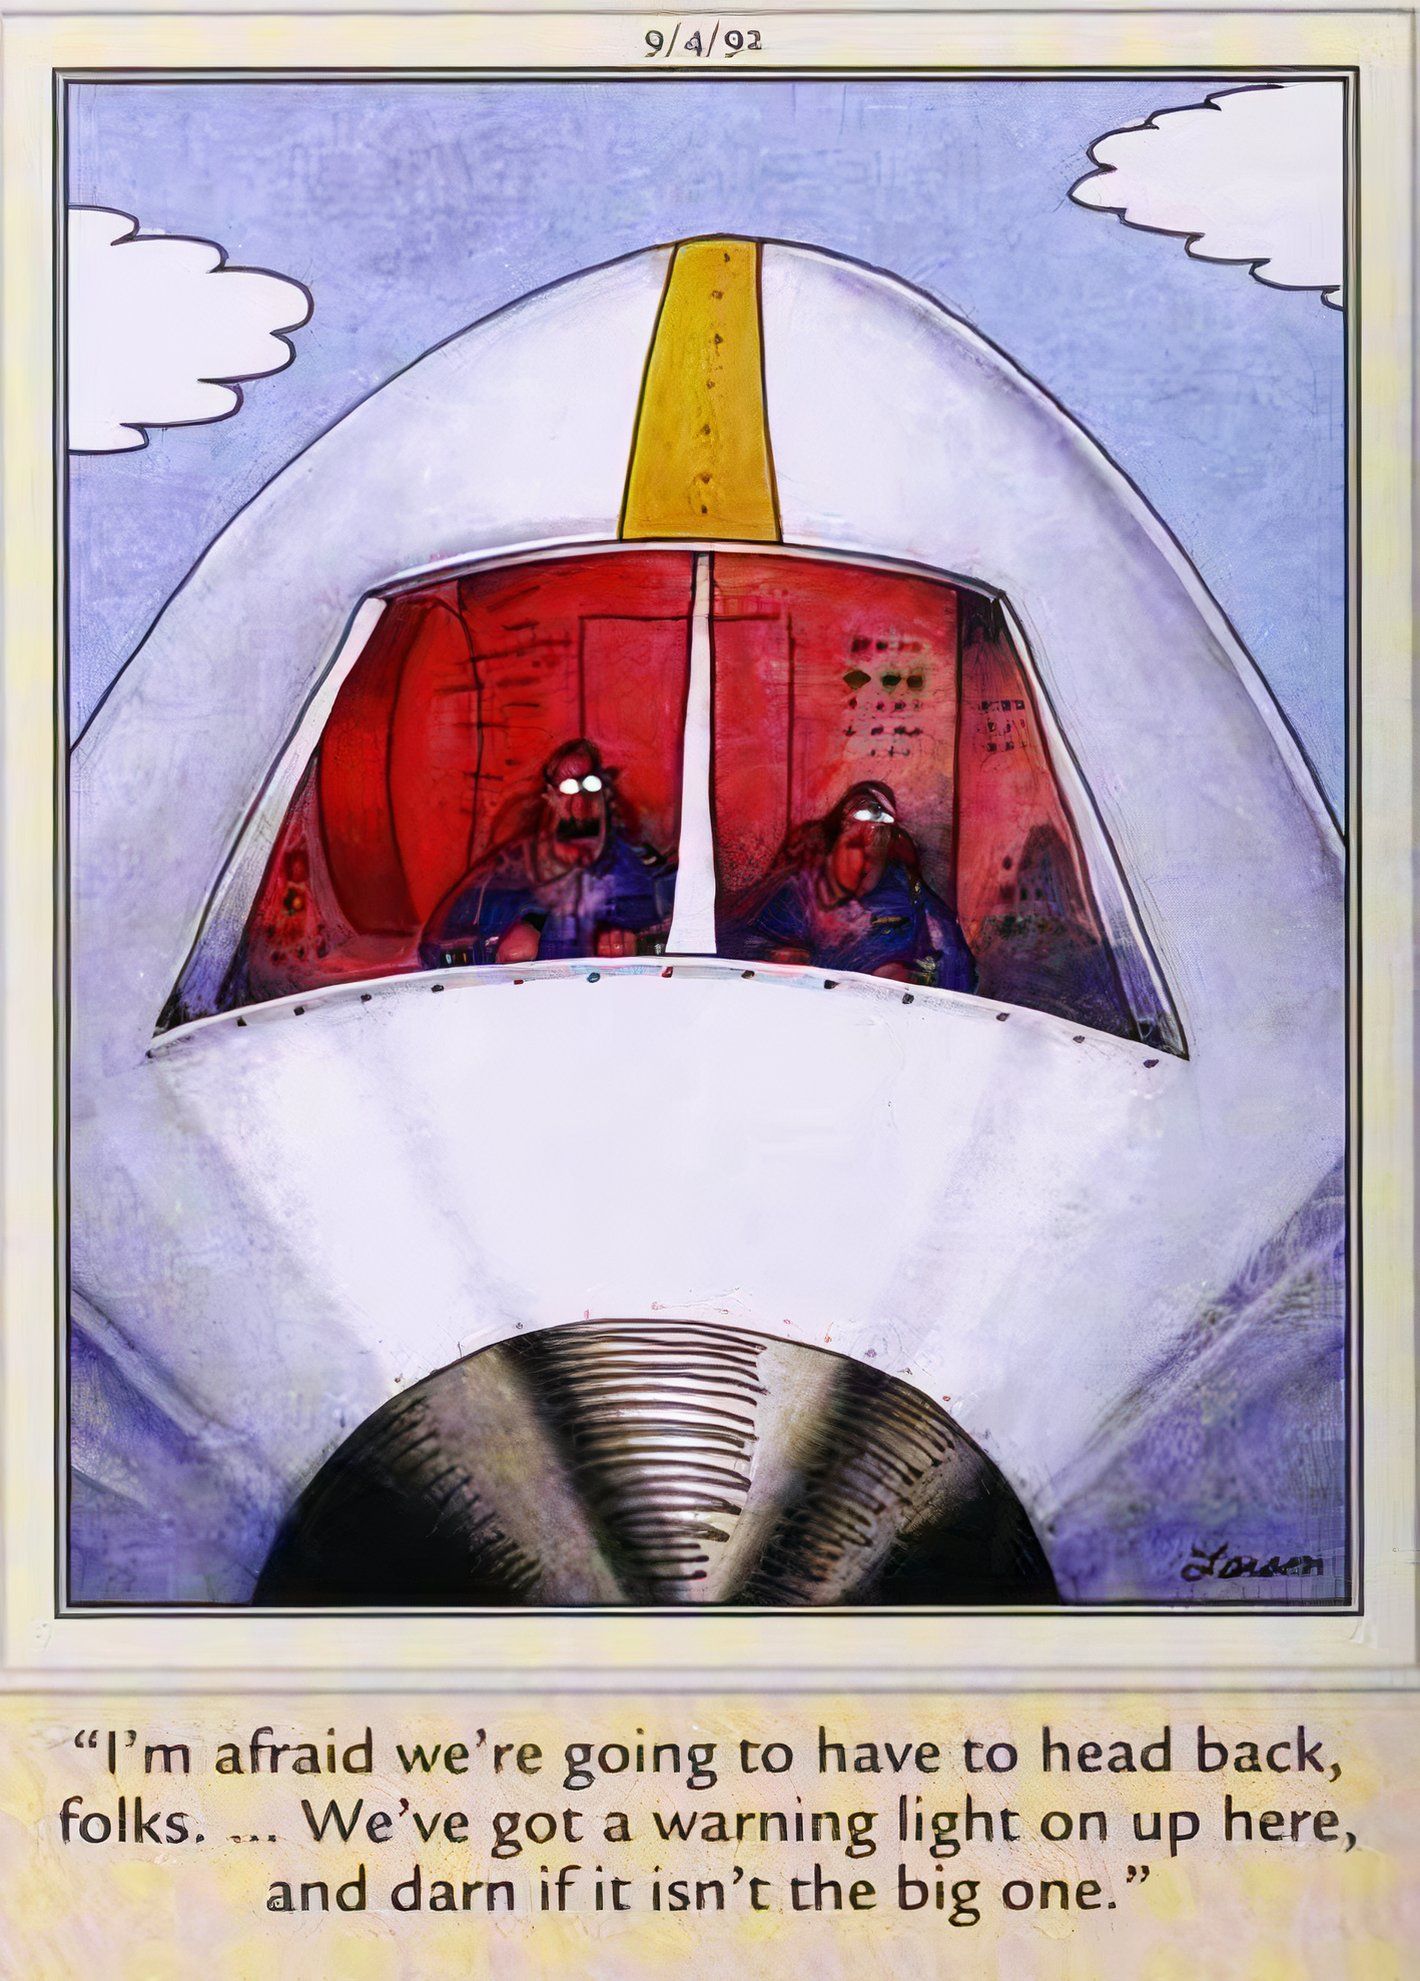 Far Side, 5 de setembro de 1991, os pilotos calmamente dizem aos passageiros que eles devem dar meia-volta enquanto a cabine se enche de uma luz vermelha ameaçadora